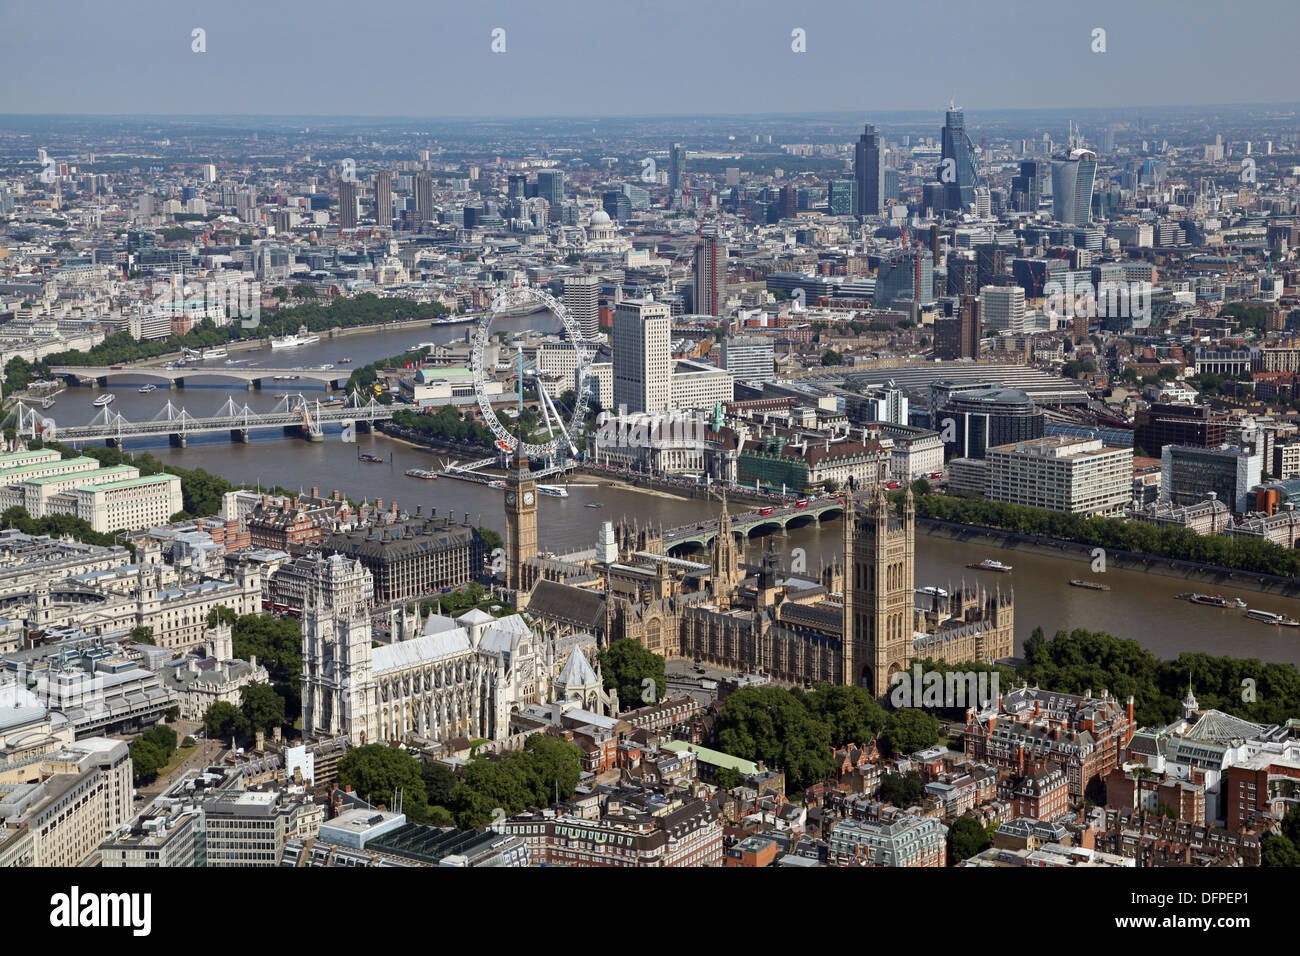 Vista aérea de la Abadía de Westminster, las Casas del Parlamento, el London Eye, Westminster Bridge, South Bank, Thames & City de Londres. Foto de stock